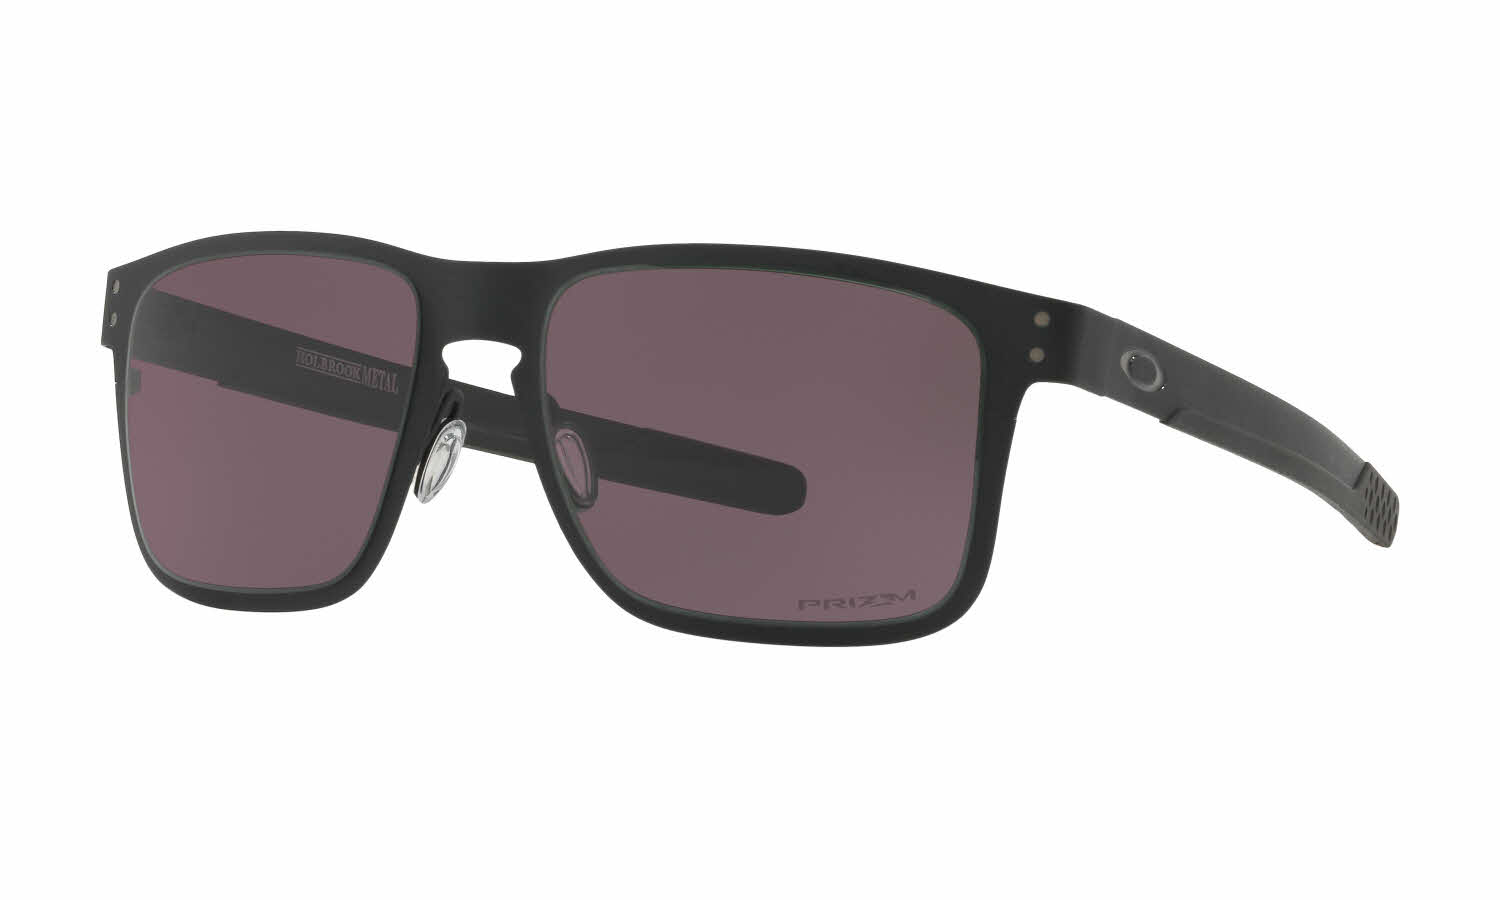 Holbrook Metal Sunglasses | FramesDirect.com